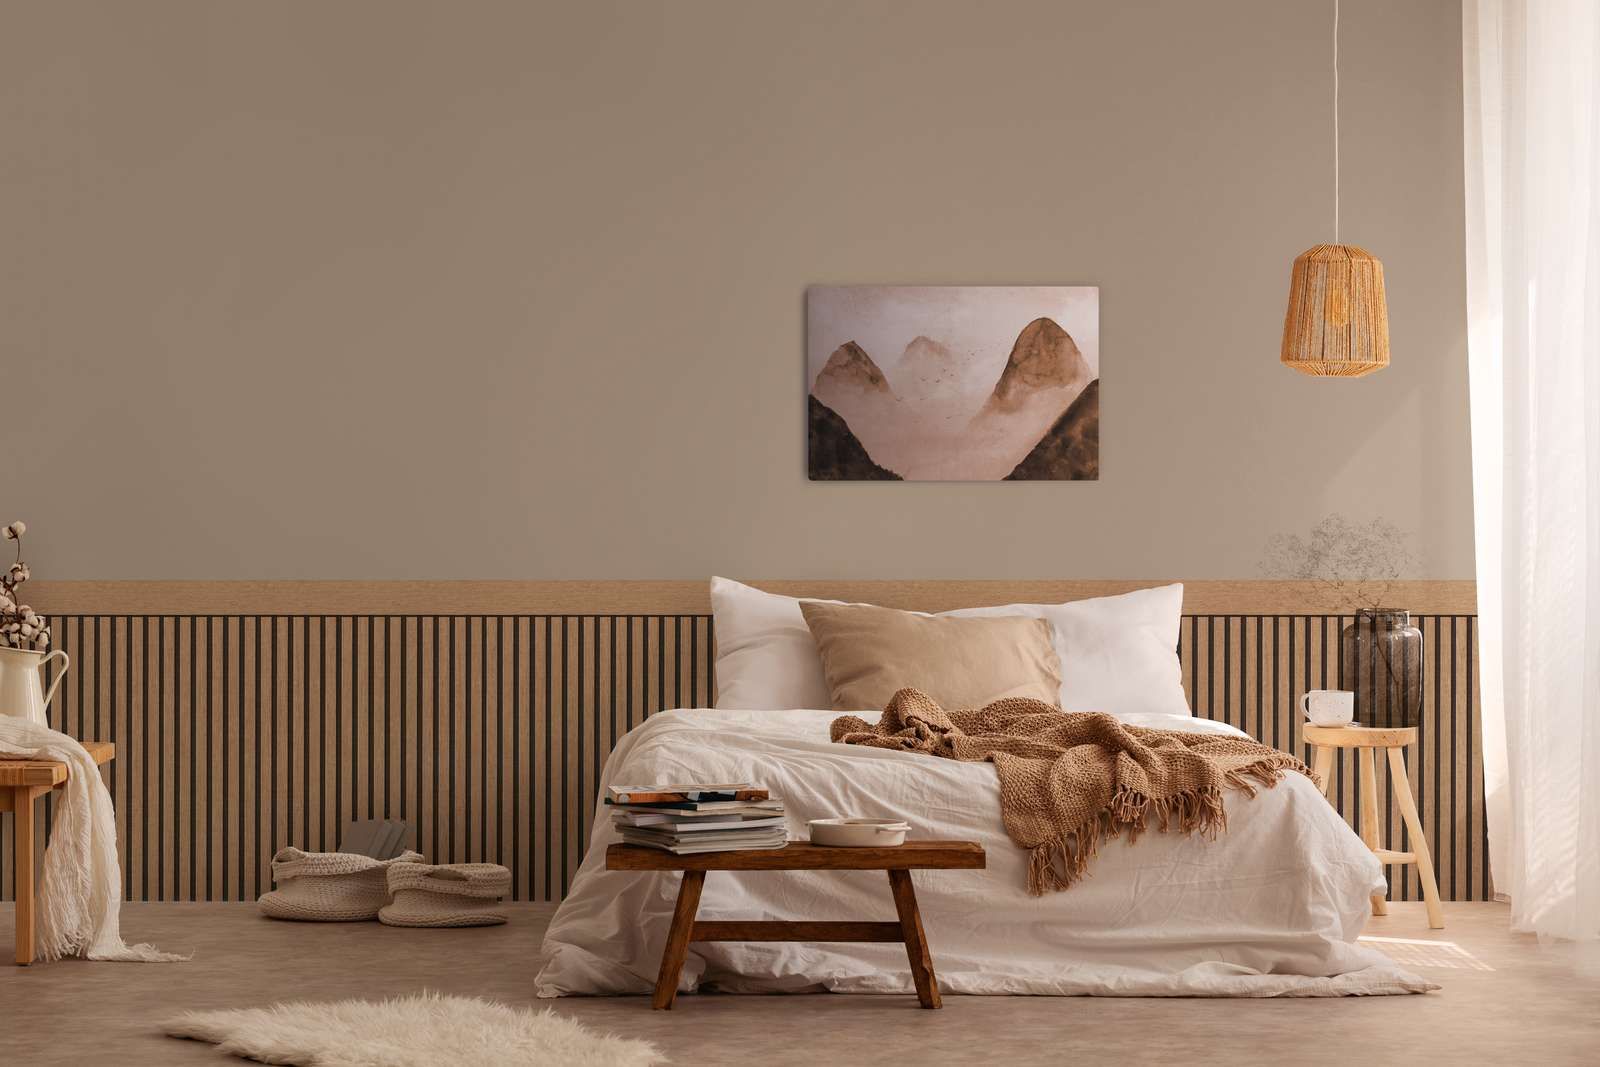             Wandvlies met realistisch akoestisch paneelpatroon van hout - beige, bruin
        